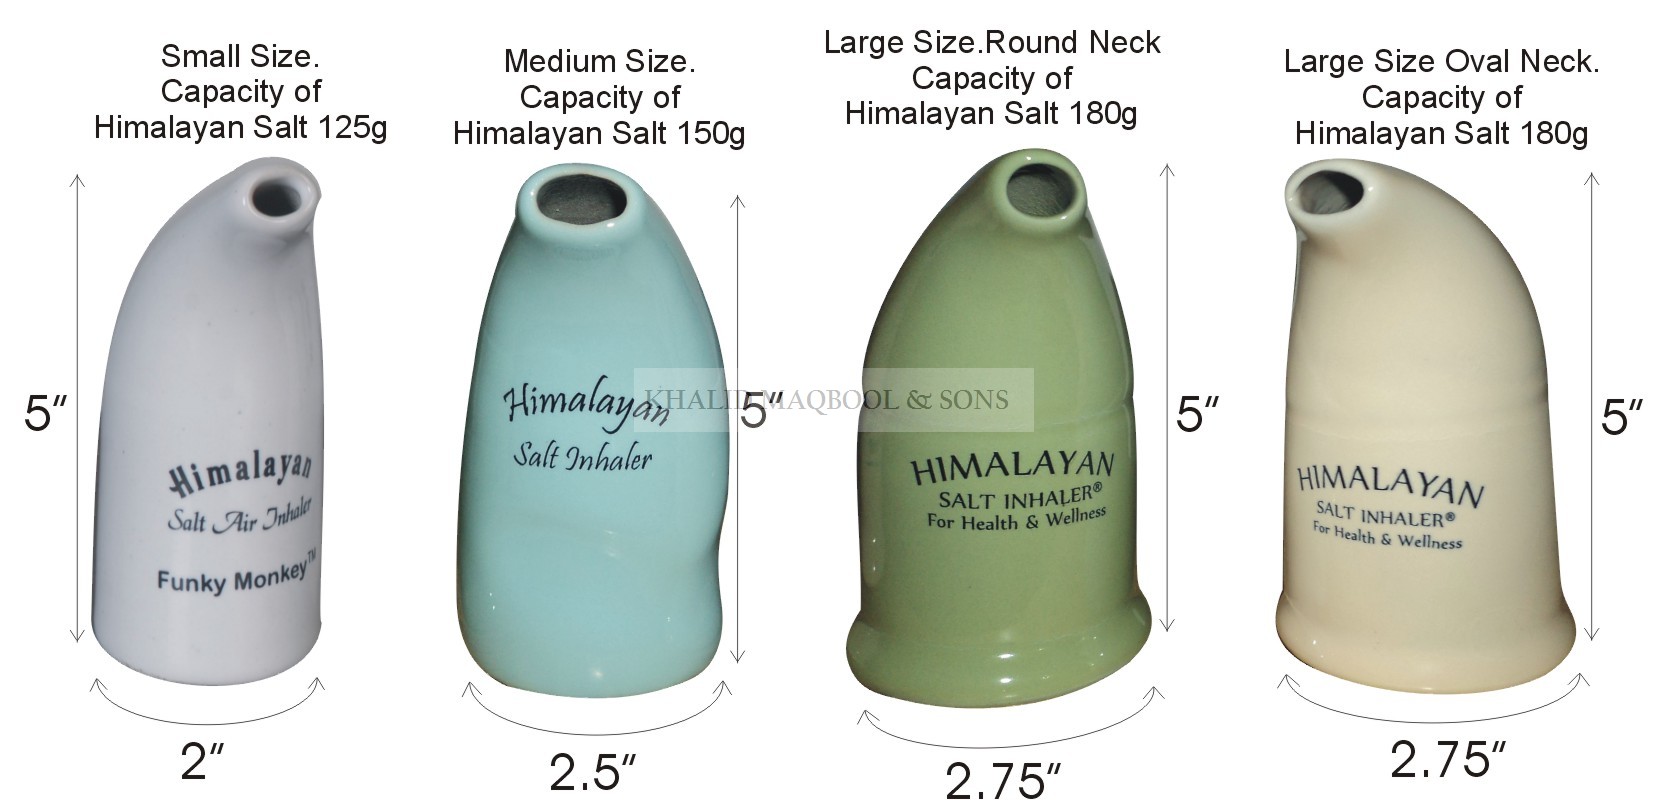 Himalayan Salt Inhalers